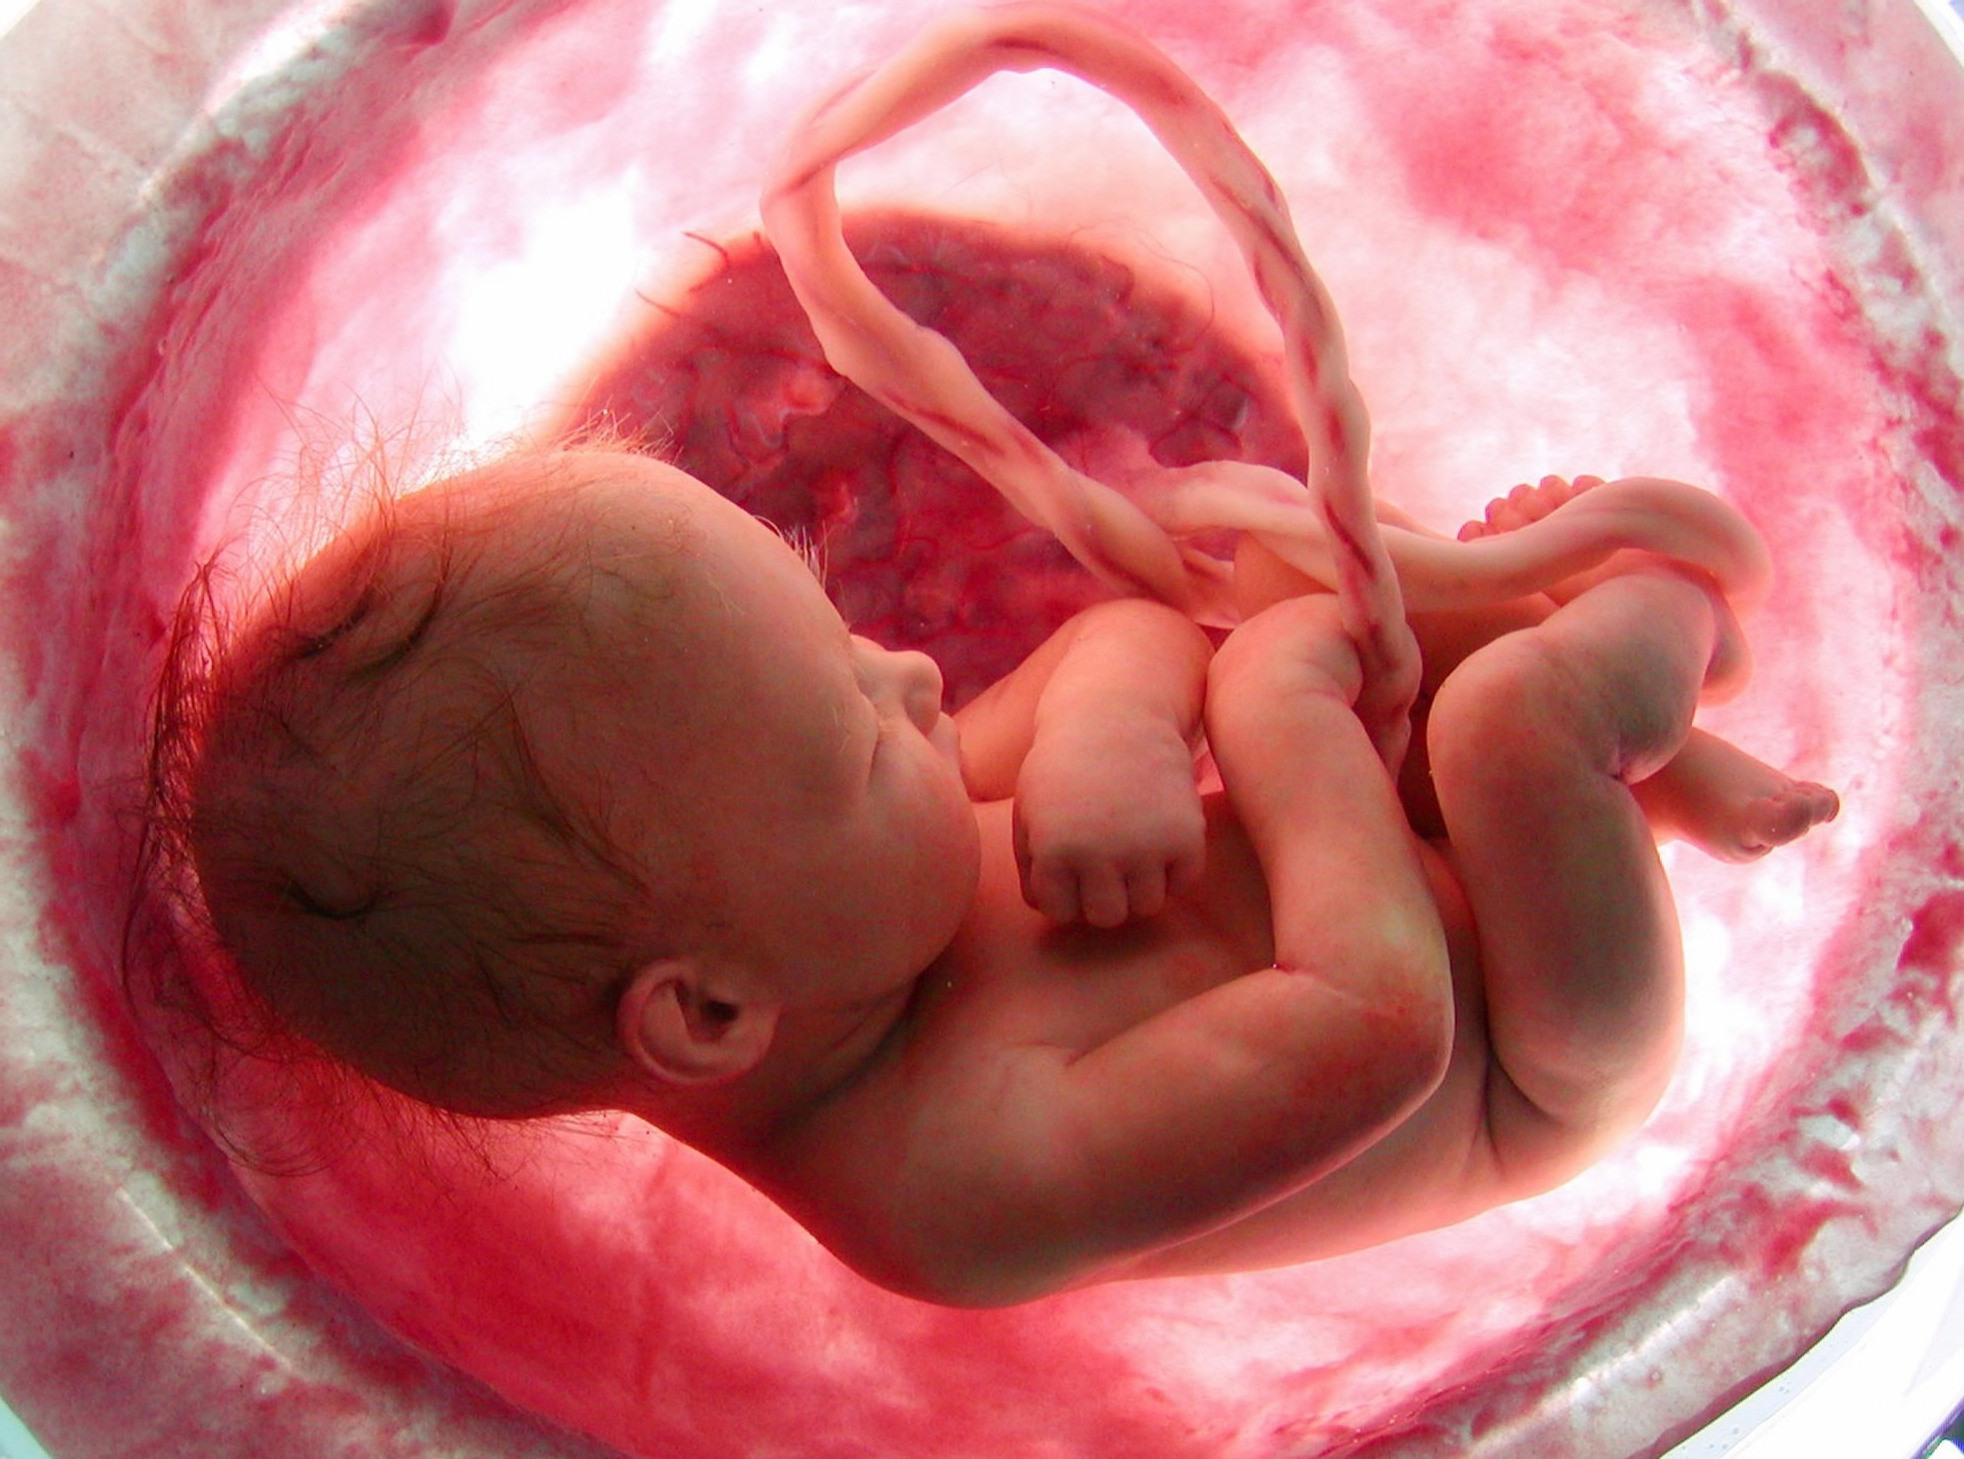 Развитие ребенка в утробе: уникальные фото от зачатия до родов